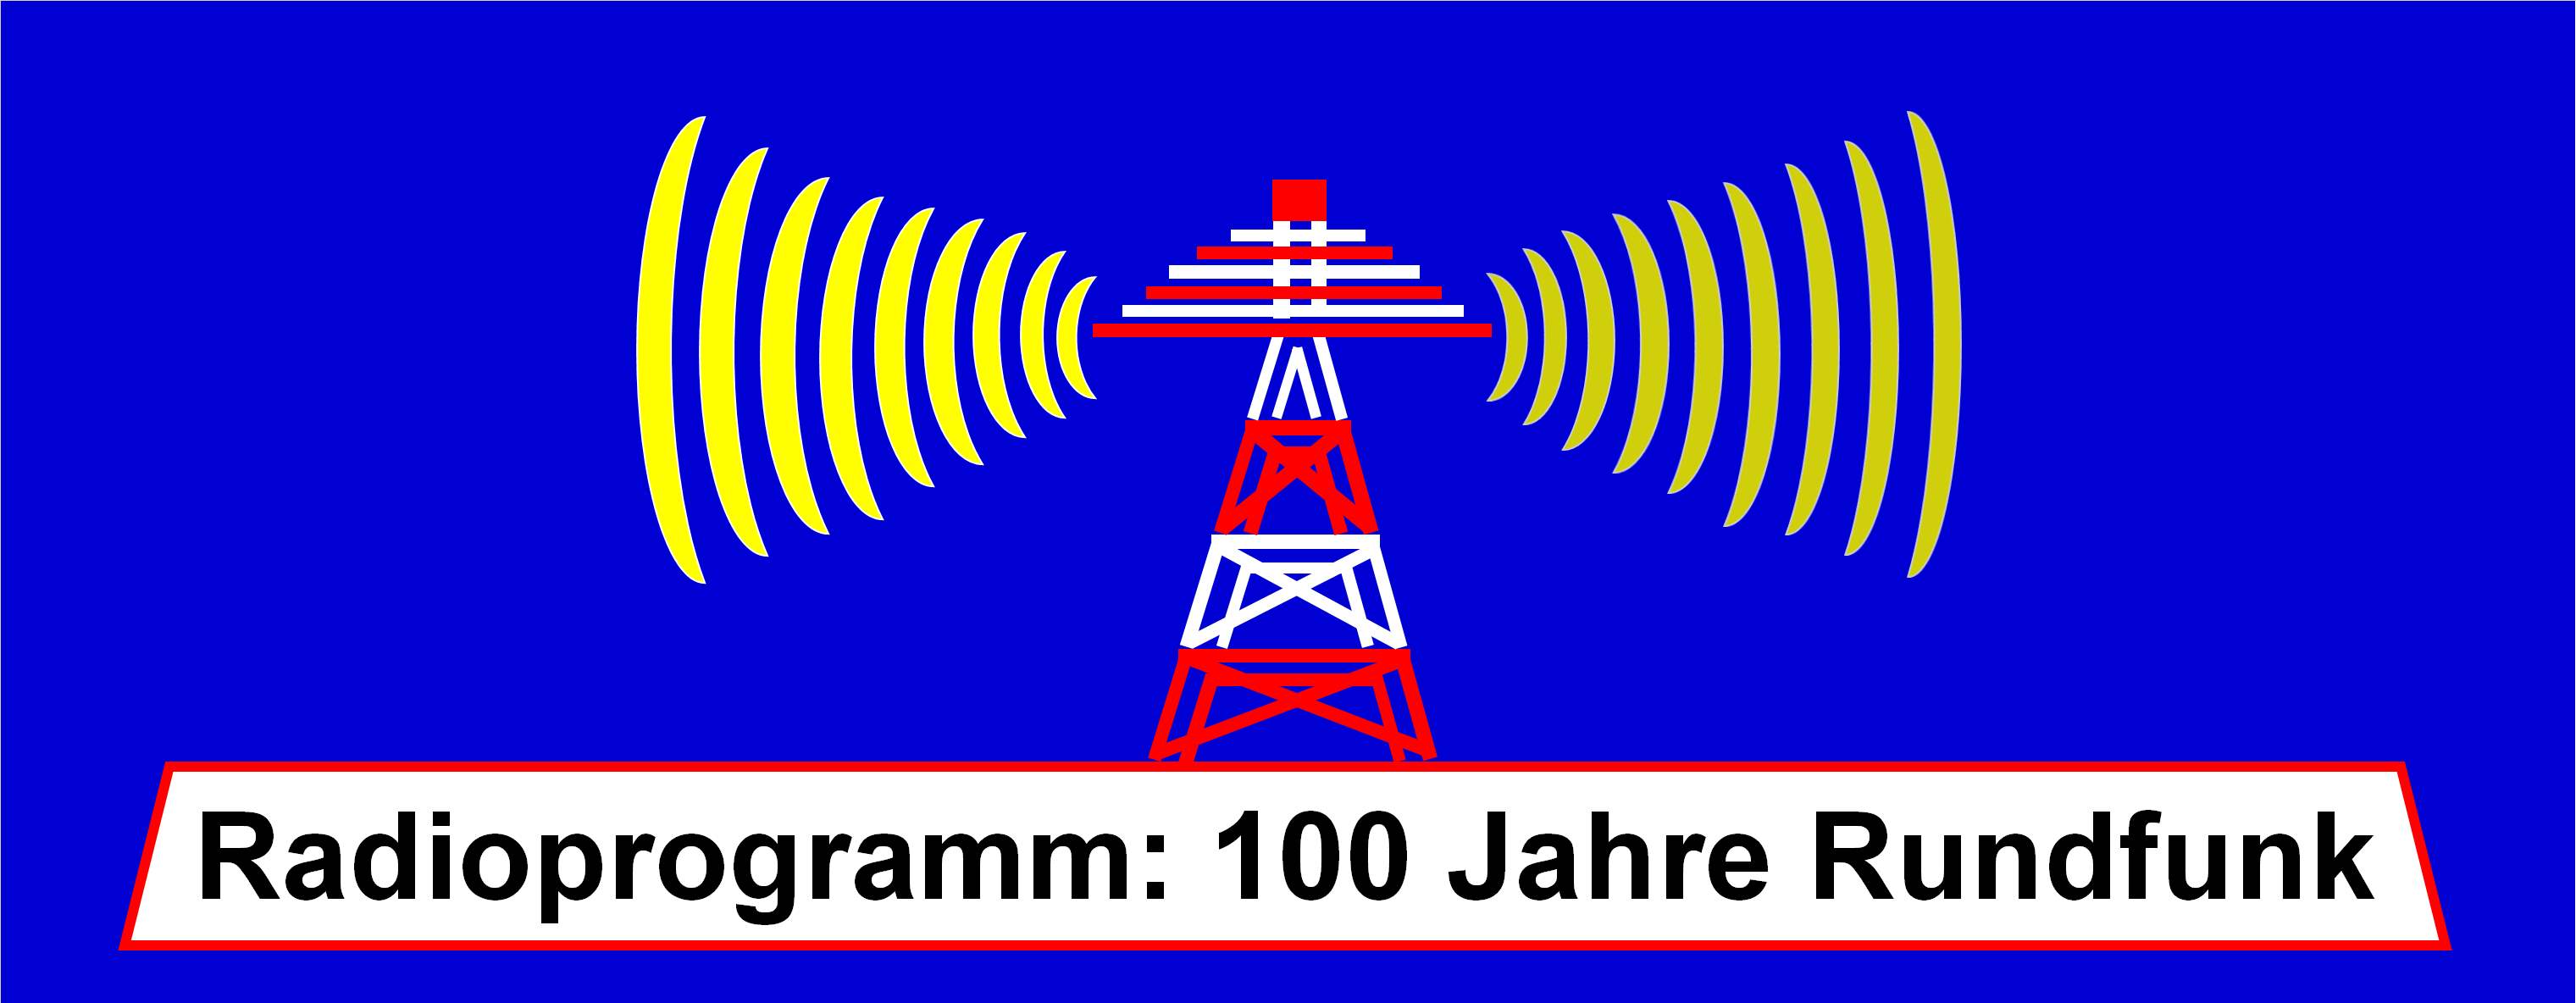 Internetradio:  100 Jahre Rundfunk mit 24h-Programm